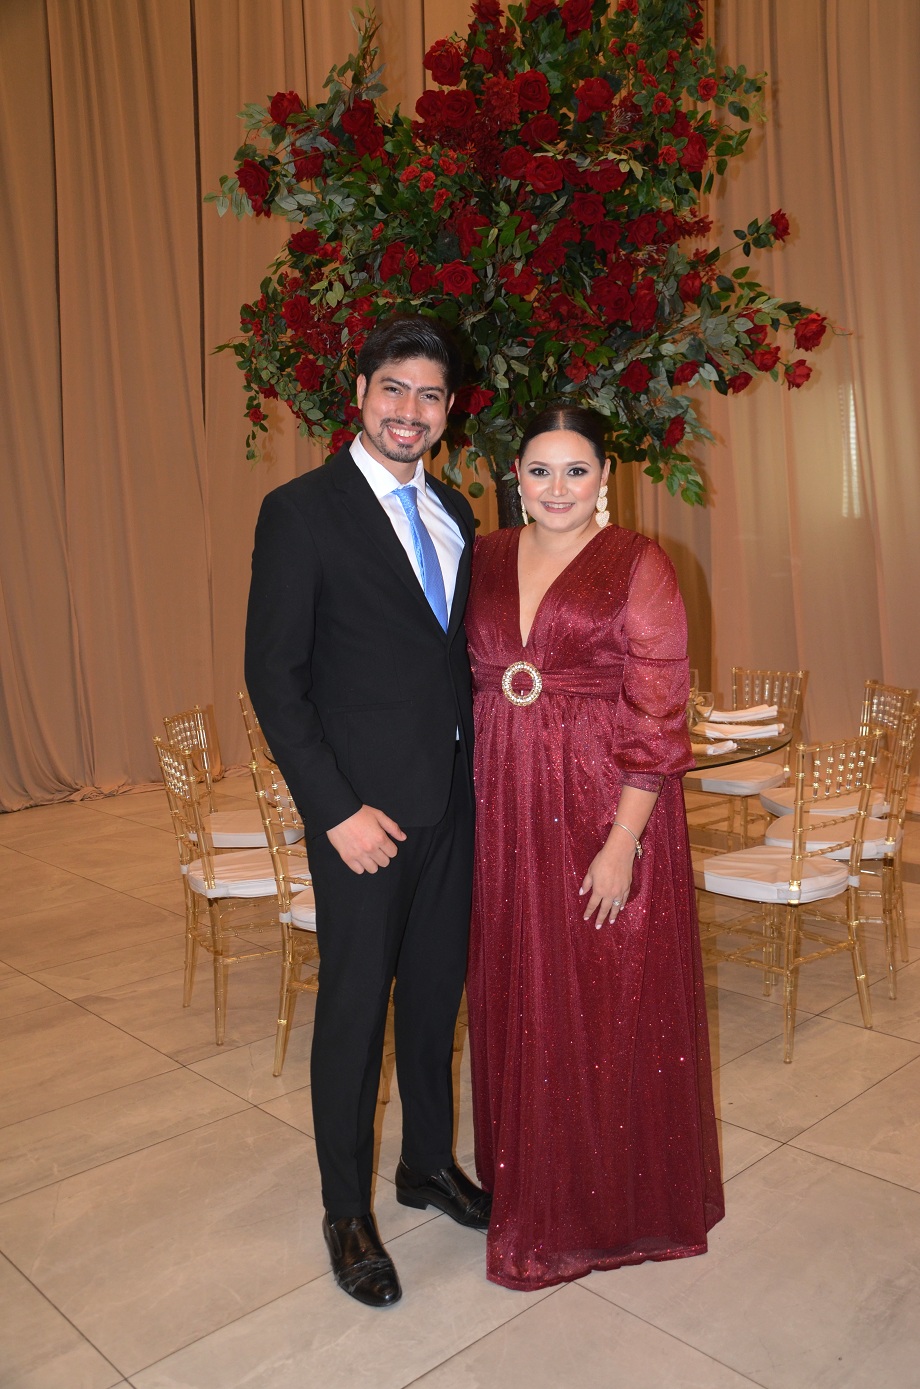 La boda de Mario Matamoros y Cindy Cárdenas… Preciosa y acogedora